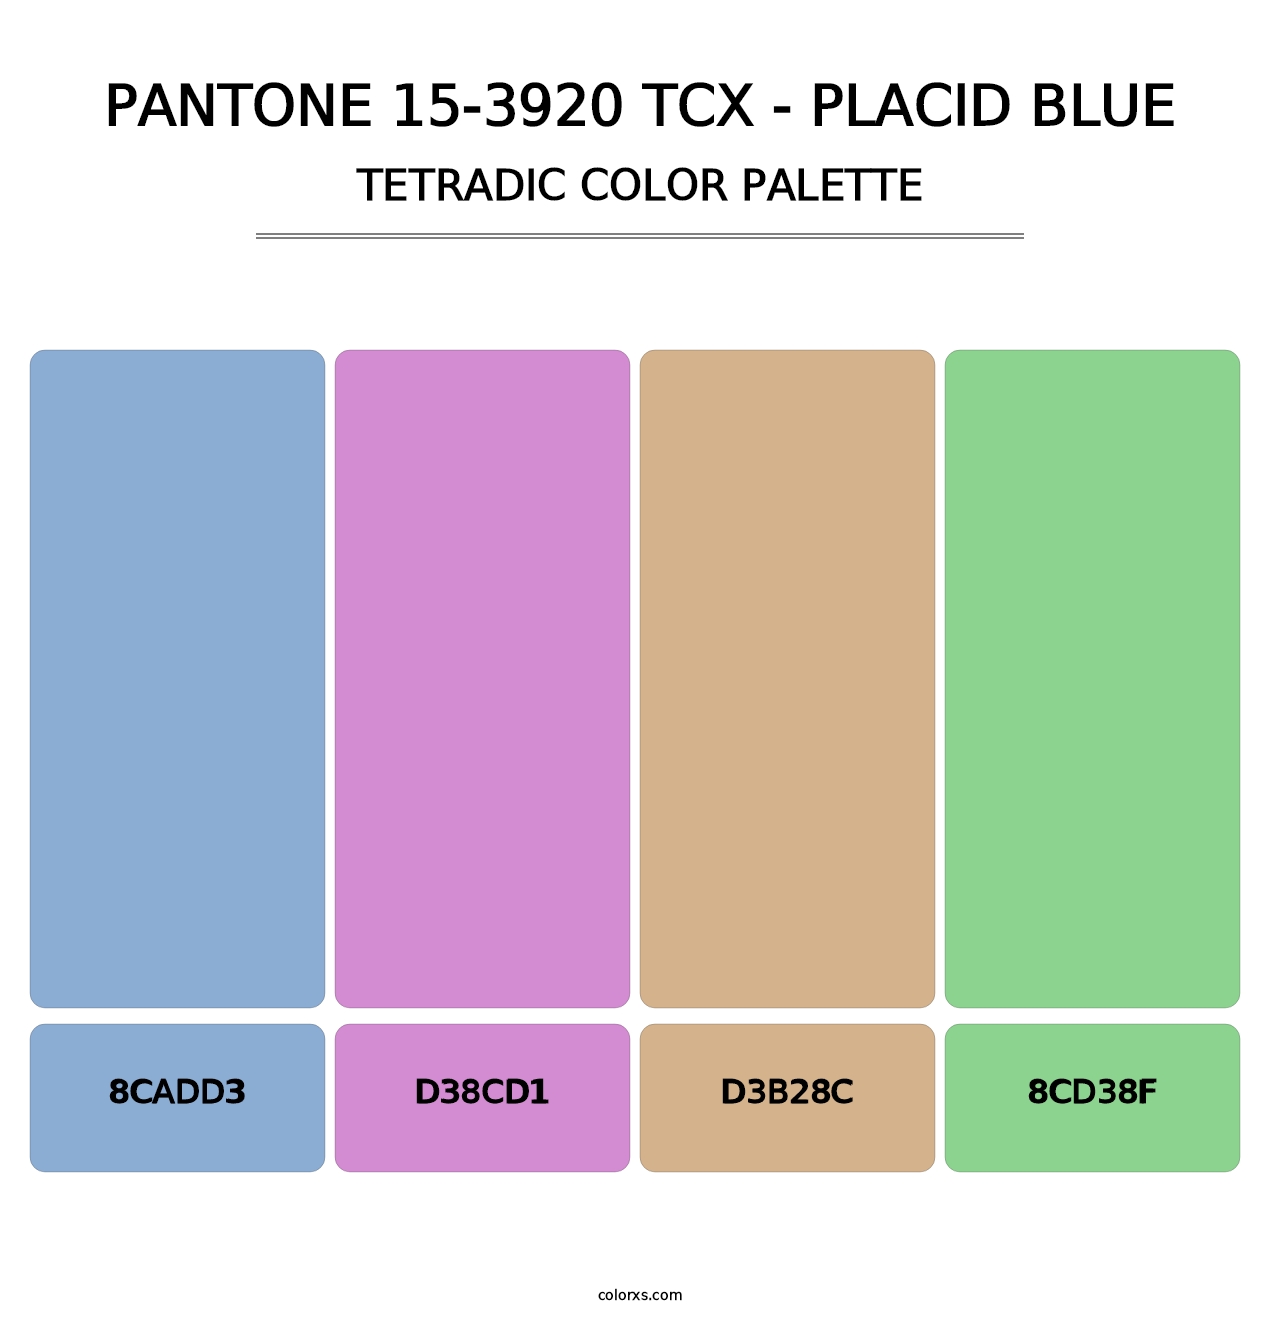 PANTONE 15-3920 TCX - Placid Blue - Tetradic Color Palette